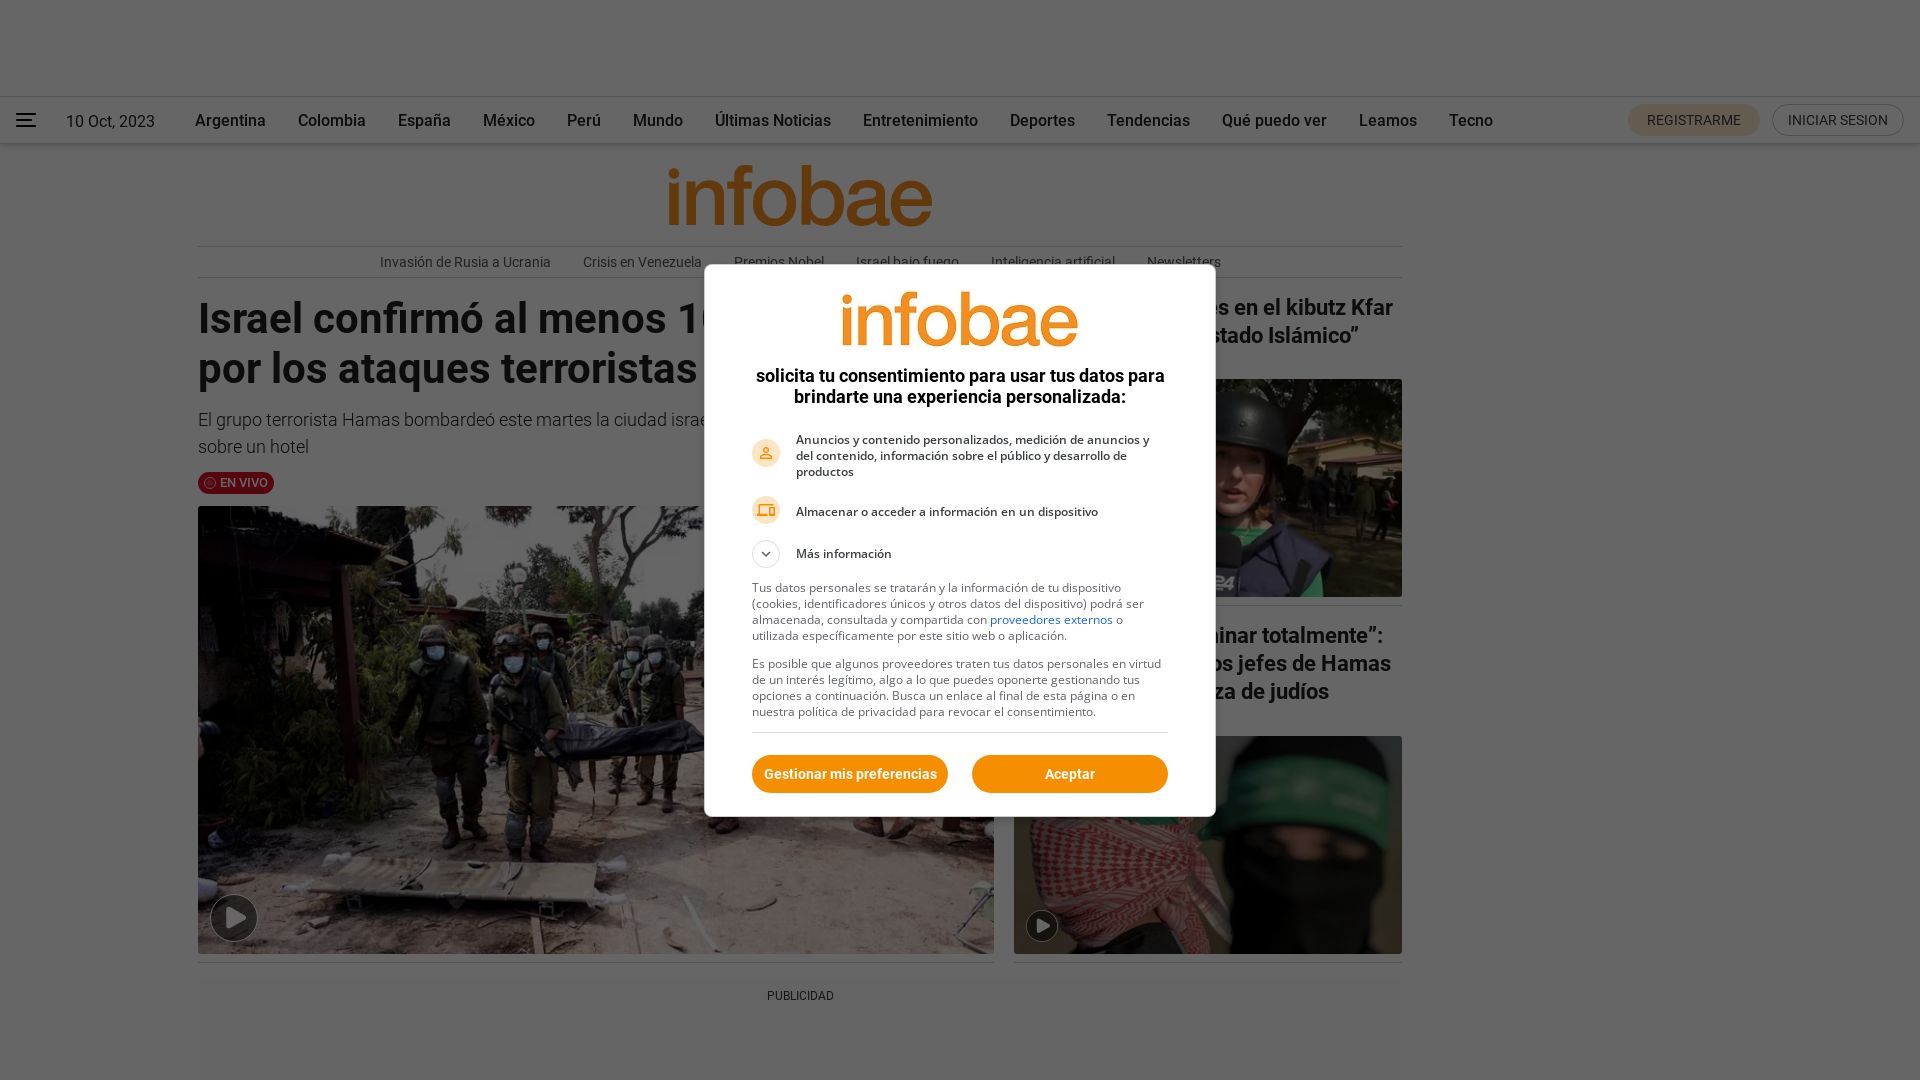 Estado web infobae.com está   ONLINE